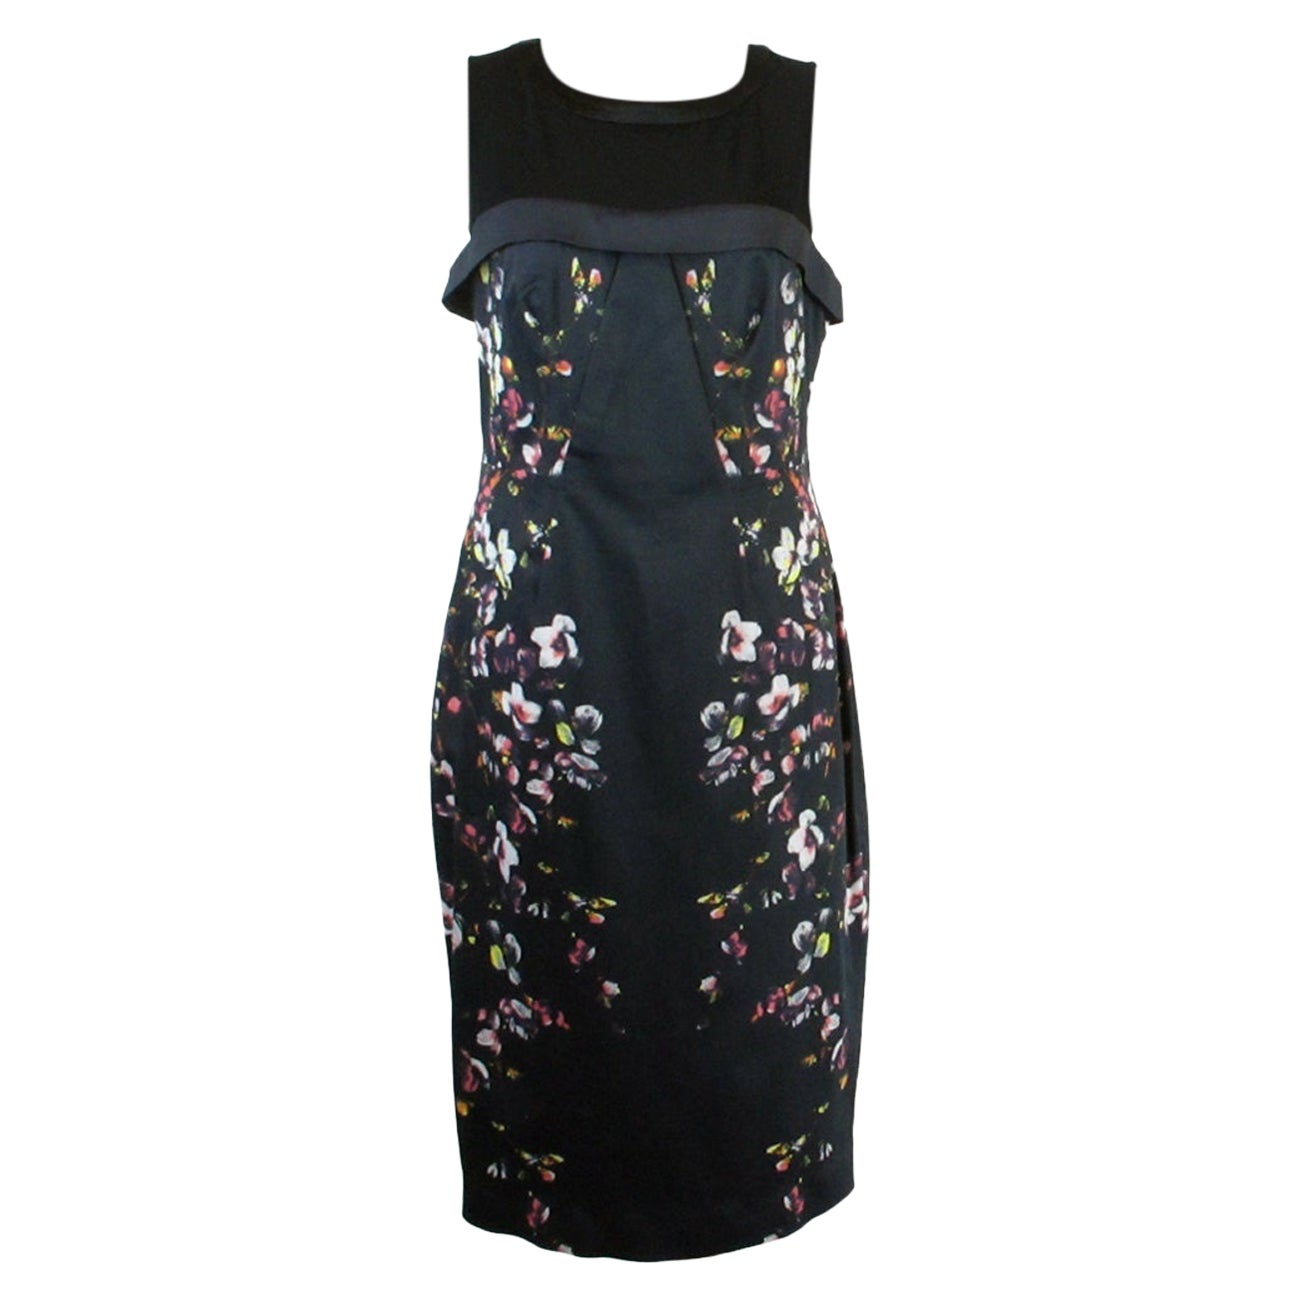 Karen Millen UK 16 Floral Black a-line Dress Collar Detail For Sale